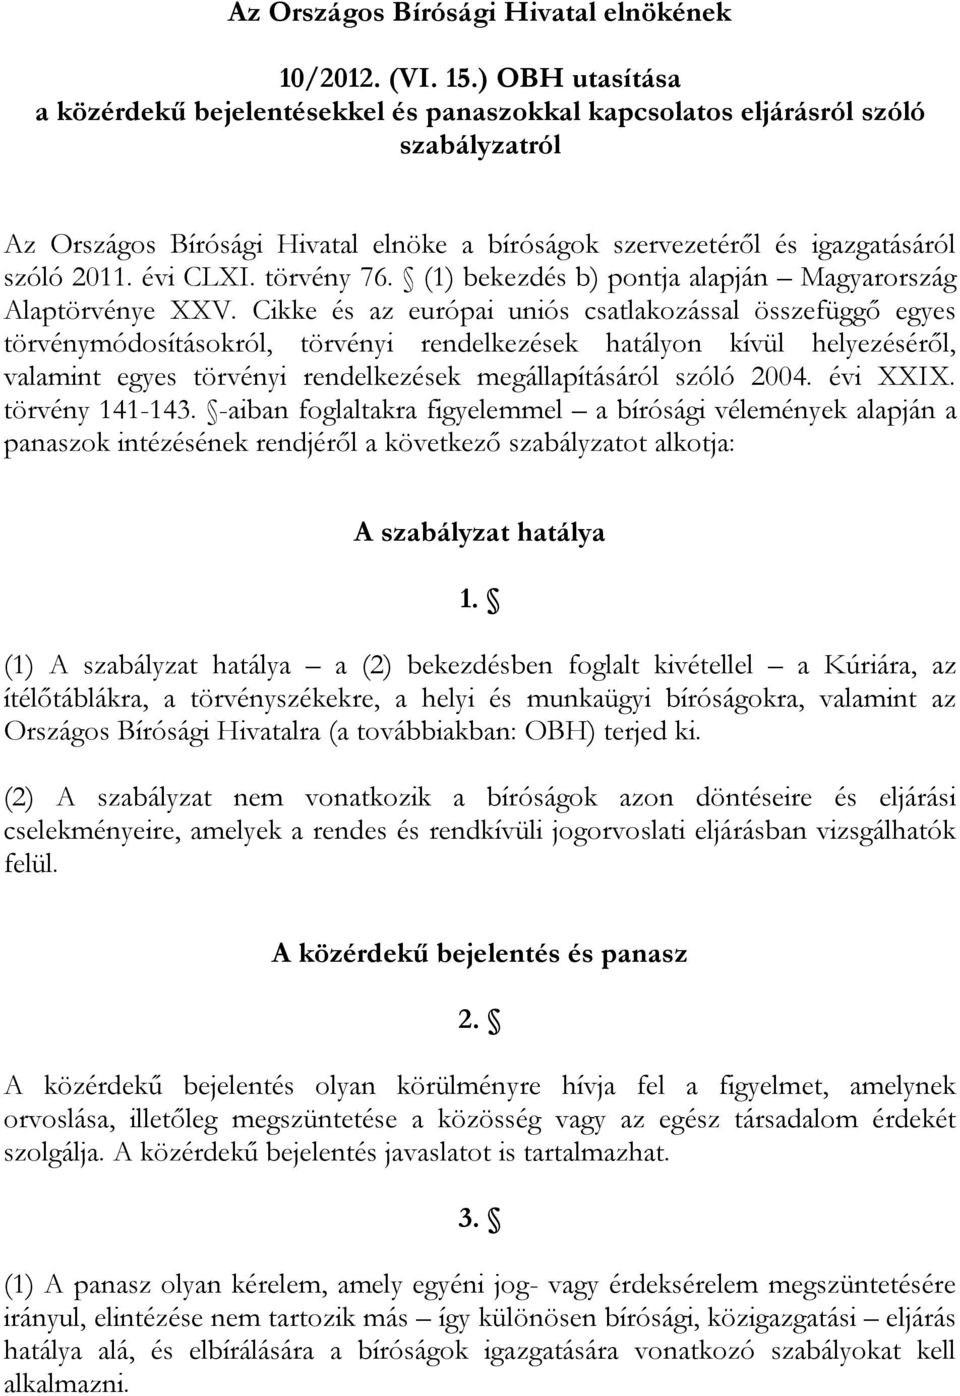 évi CLXI. törvény 76. (1) bekezdés b) pontja alapján Magyarország Alaptörvénye XXV.